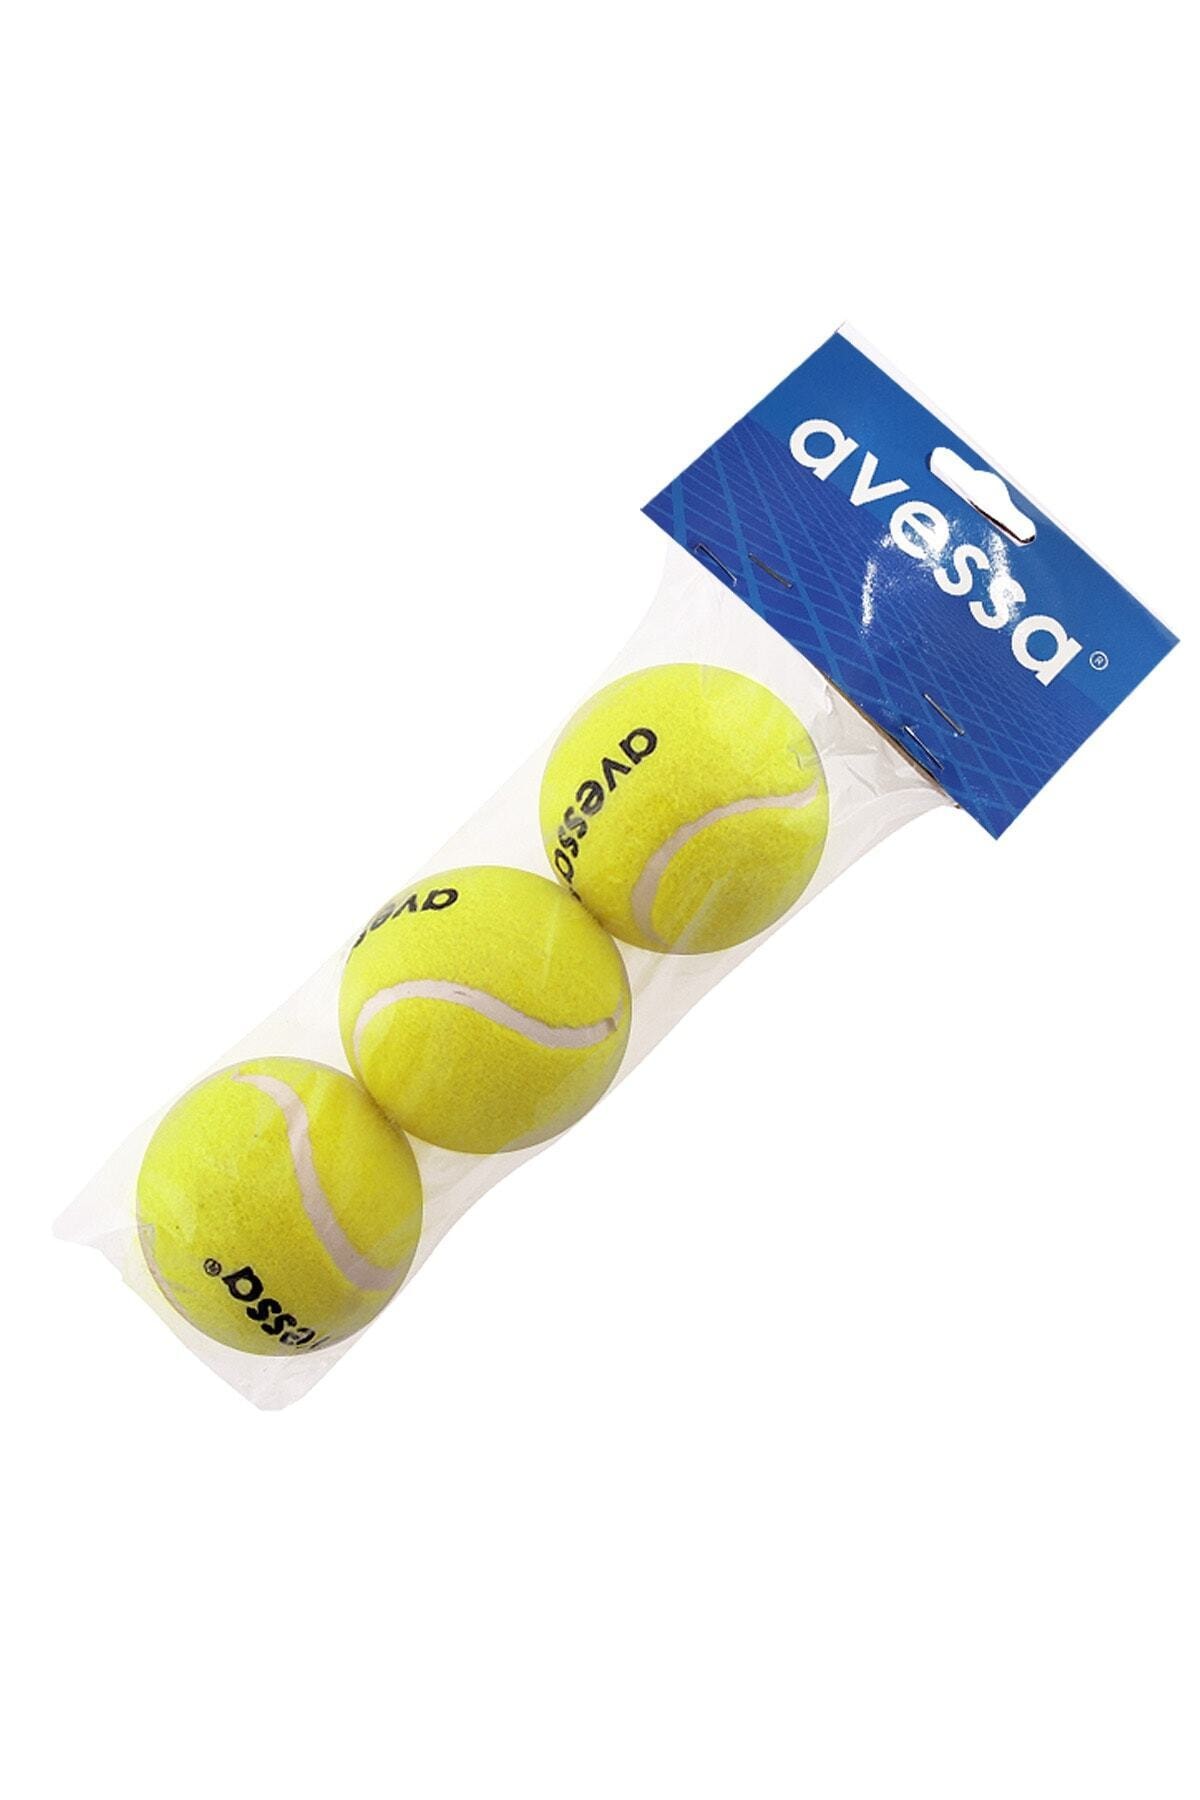 Avessa Sarı 3 lü Sarı Tenis Topu 